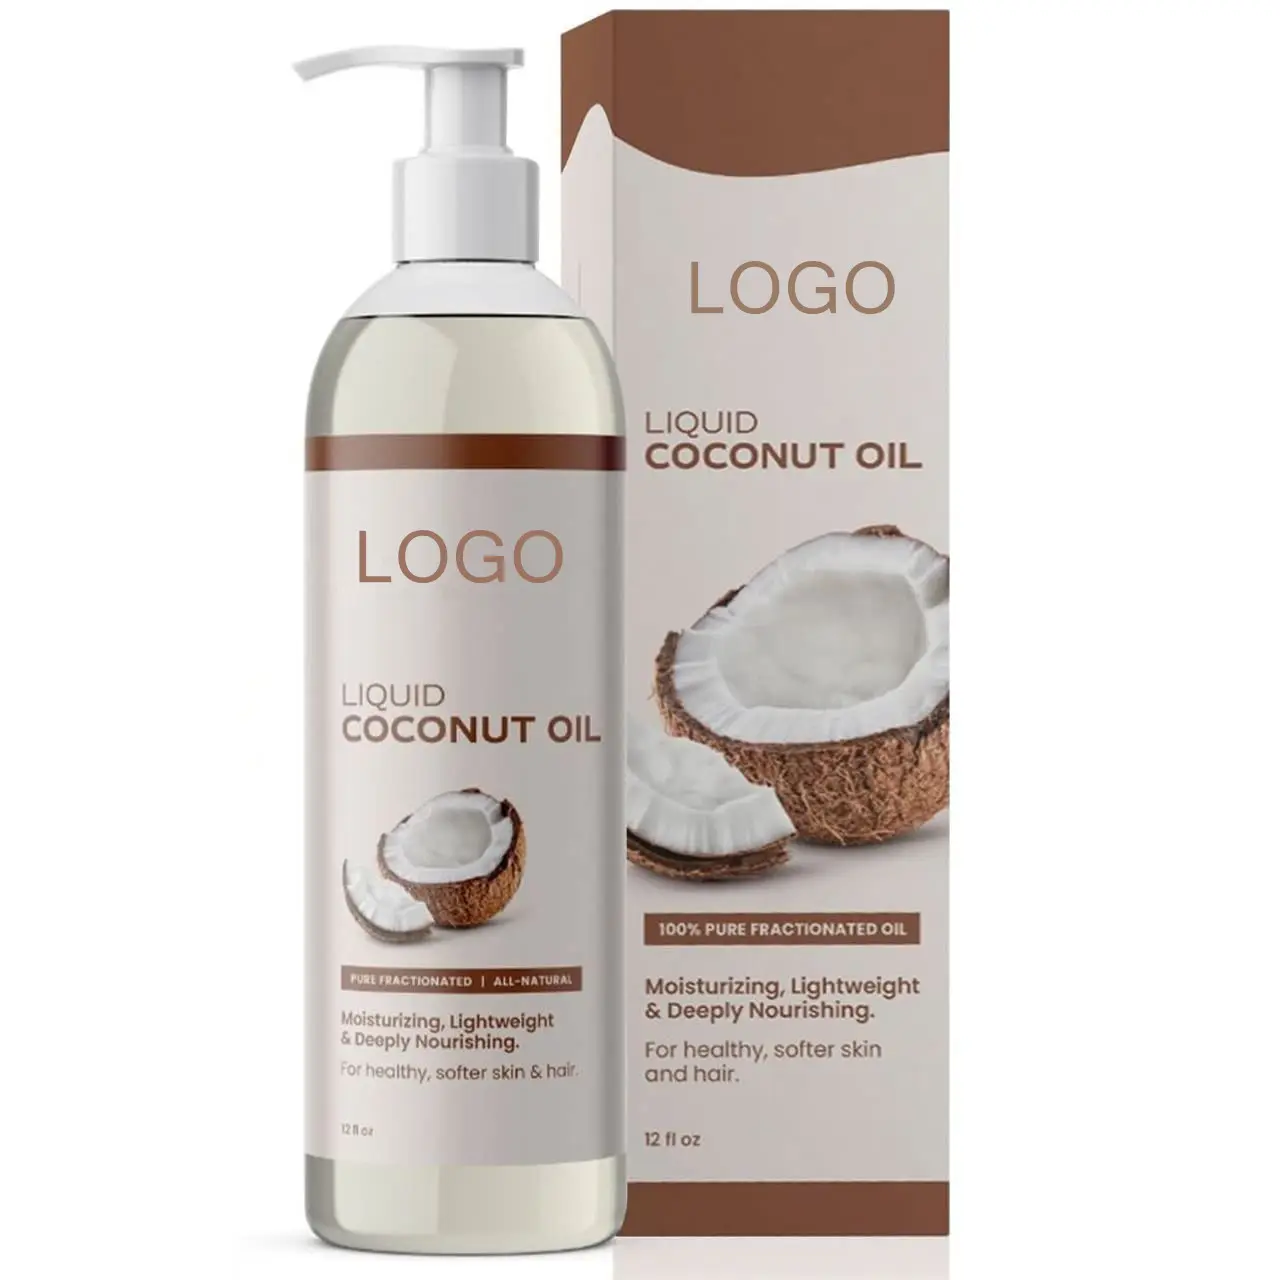 Huile de noix de coco liquide 100% pure et entièrement naturelle de marque privée pour une peau et des cheveux plus doux et sains